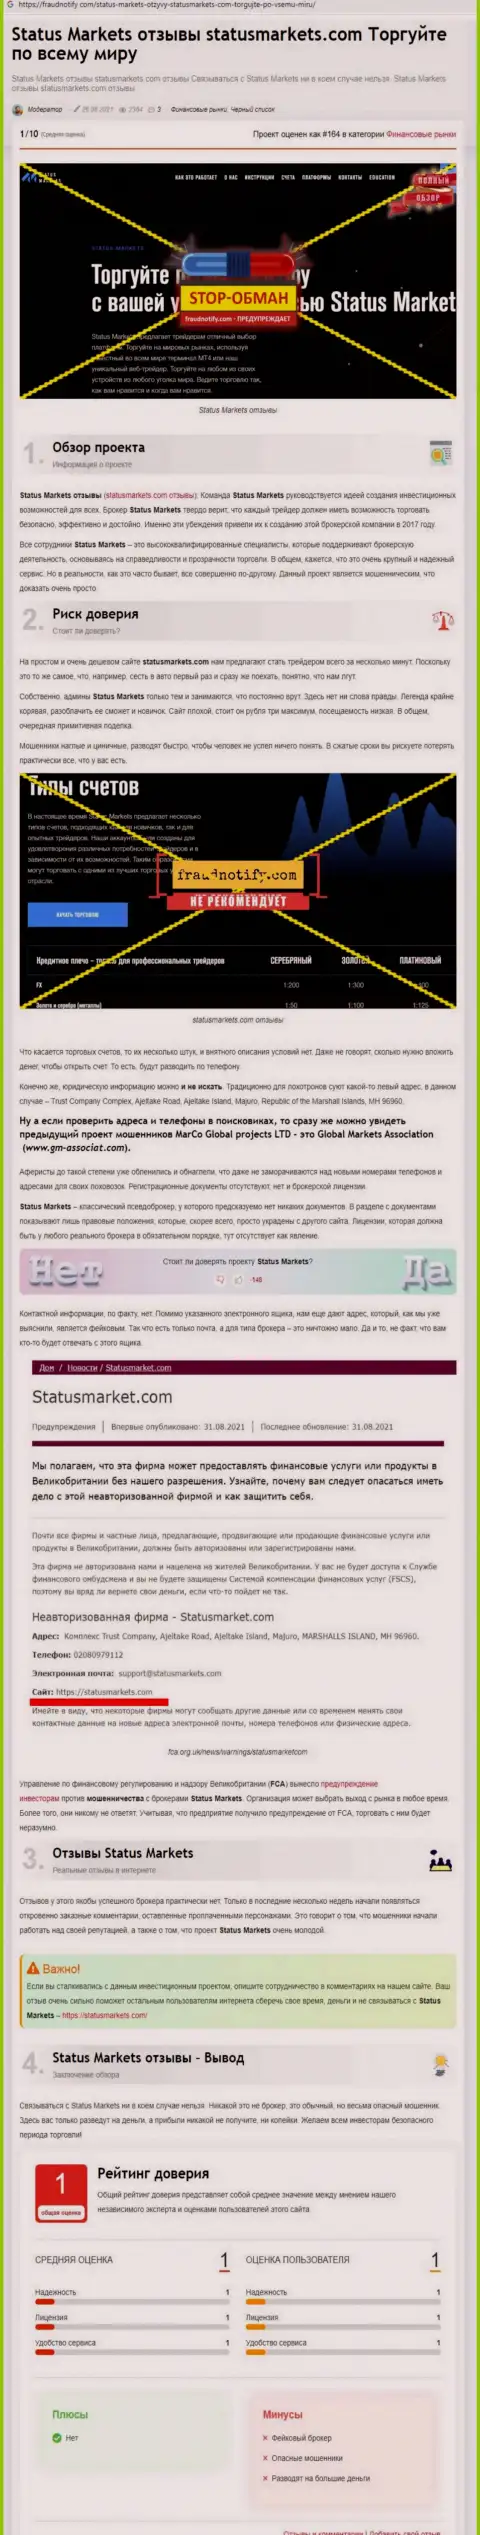 В компании StatusMarkets обманывают - свидетельства противозаконных деяний (обзор противозаконных деяний конторы)